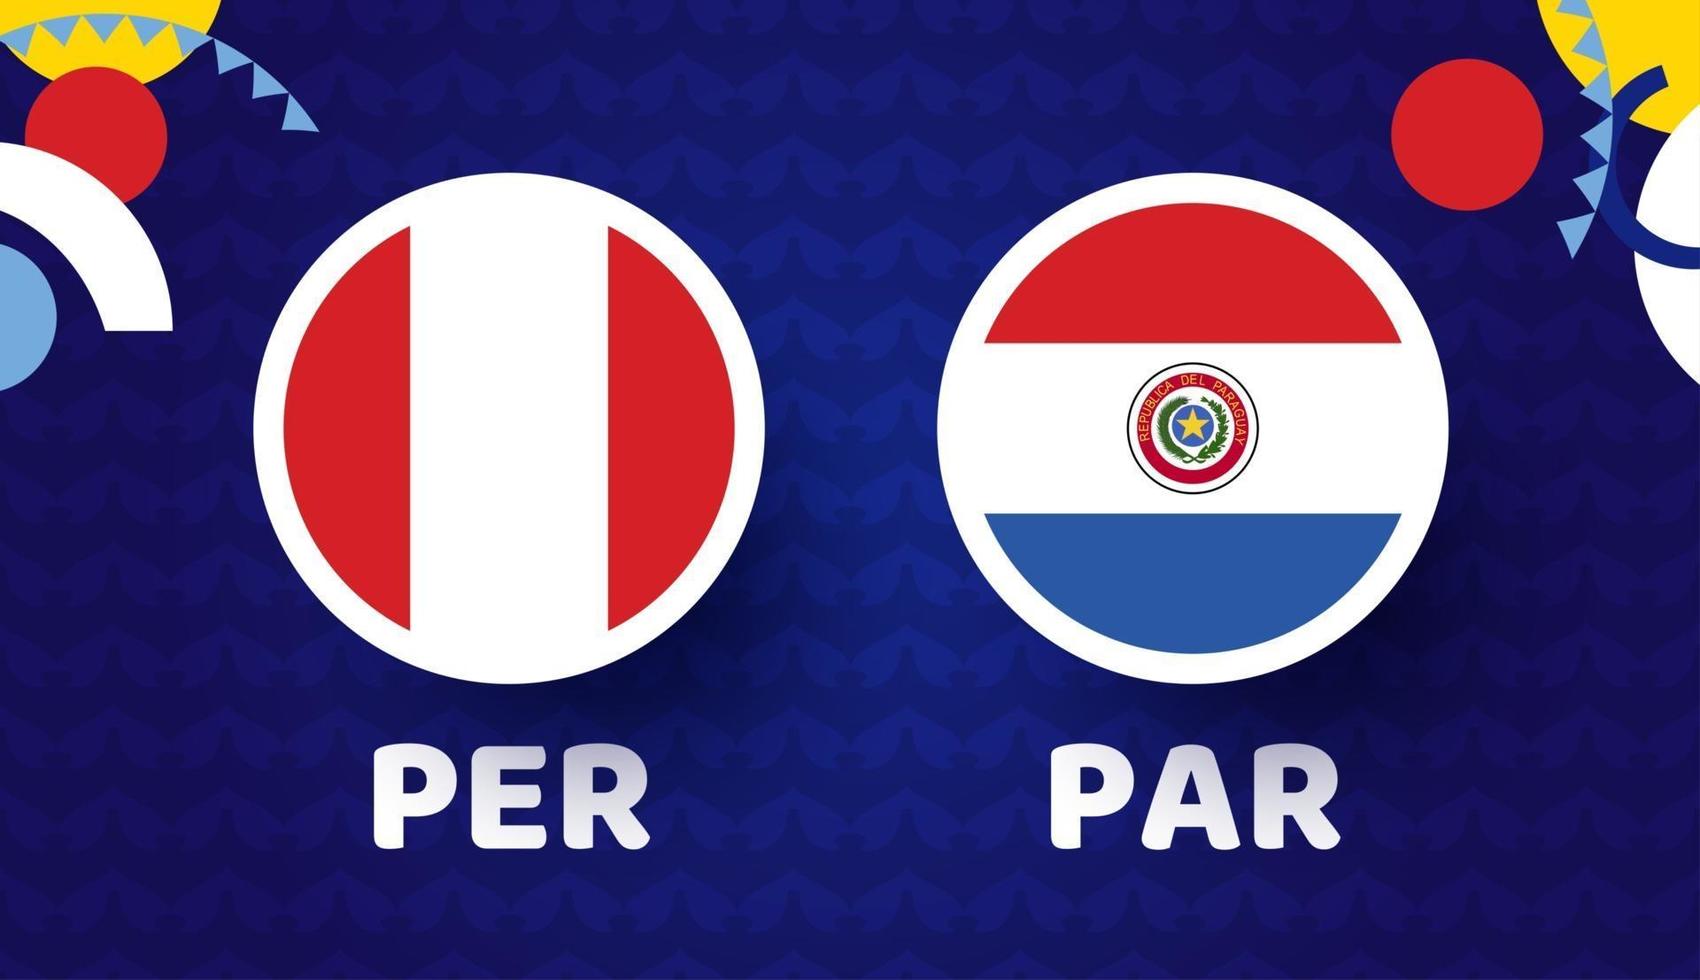 Pérou vs paraguay match illustration vectorielle championnat de football 2021 vecteur